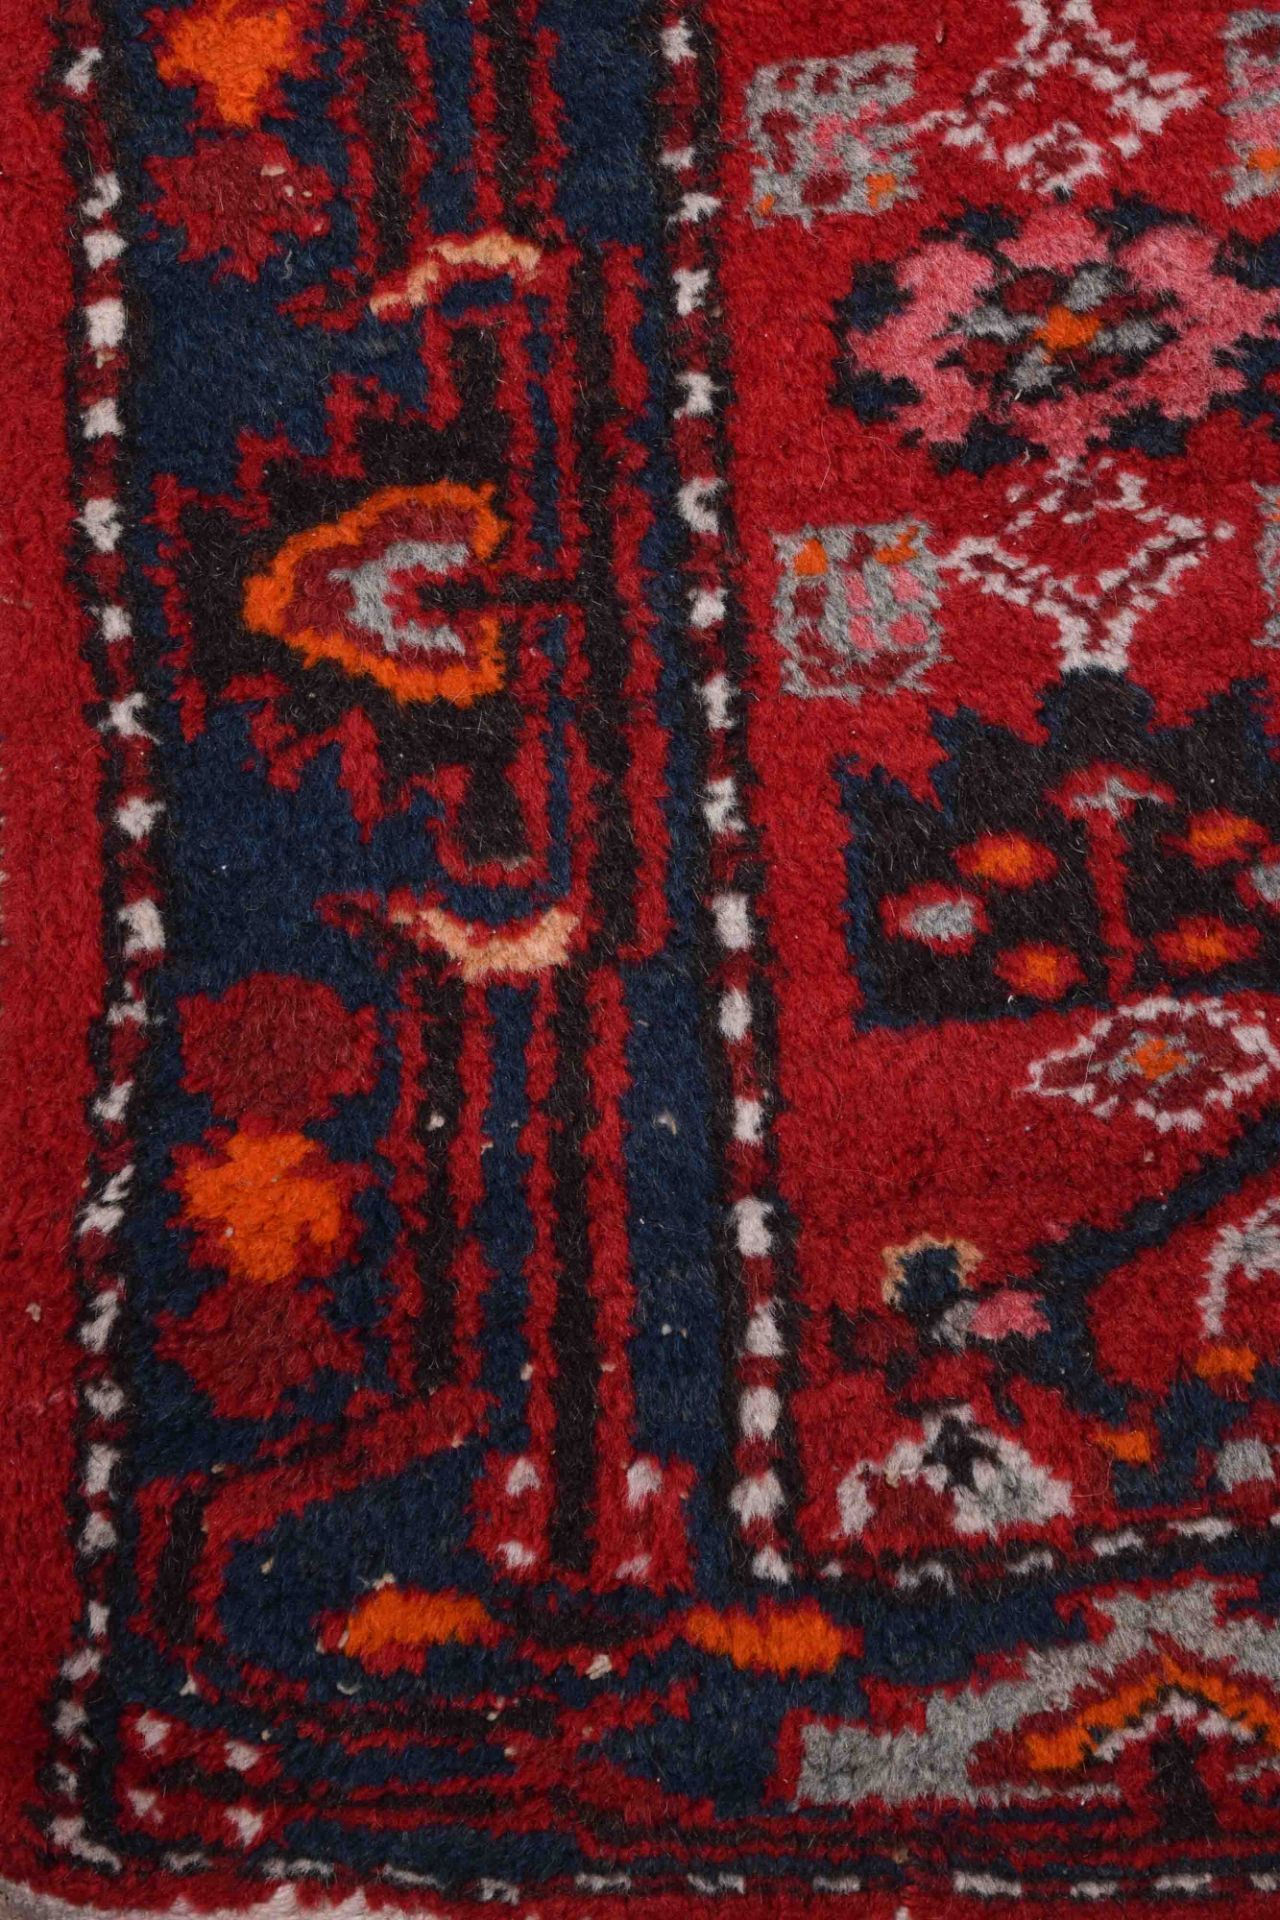 Alter Orientalischer Teppich212 cm x 108 cmOld oriental carpet212 cm x 108 cm - Bild 3 aus 4